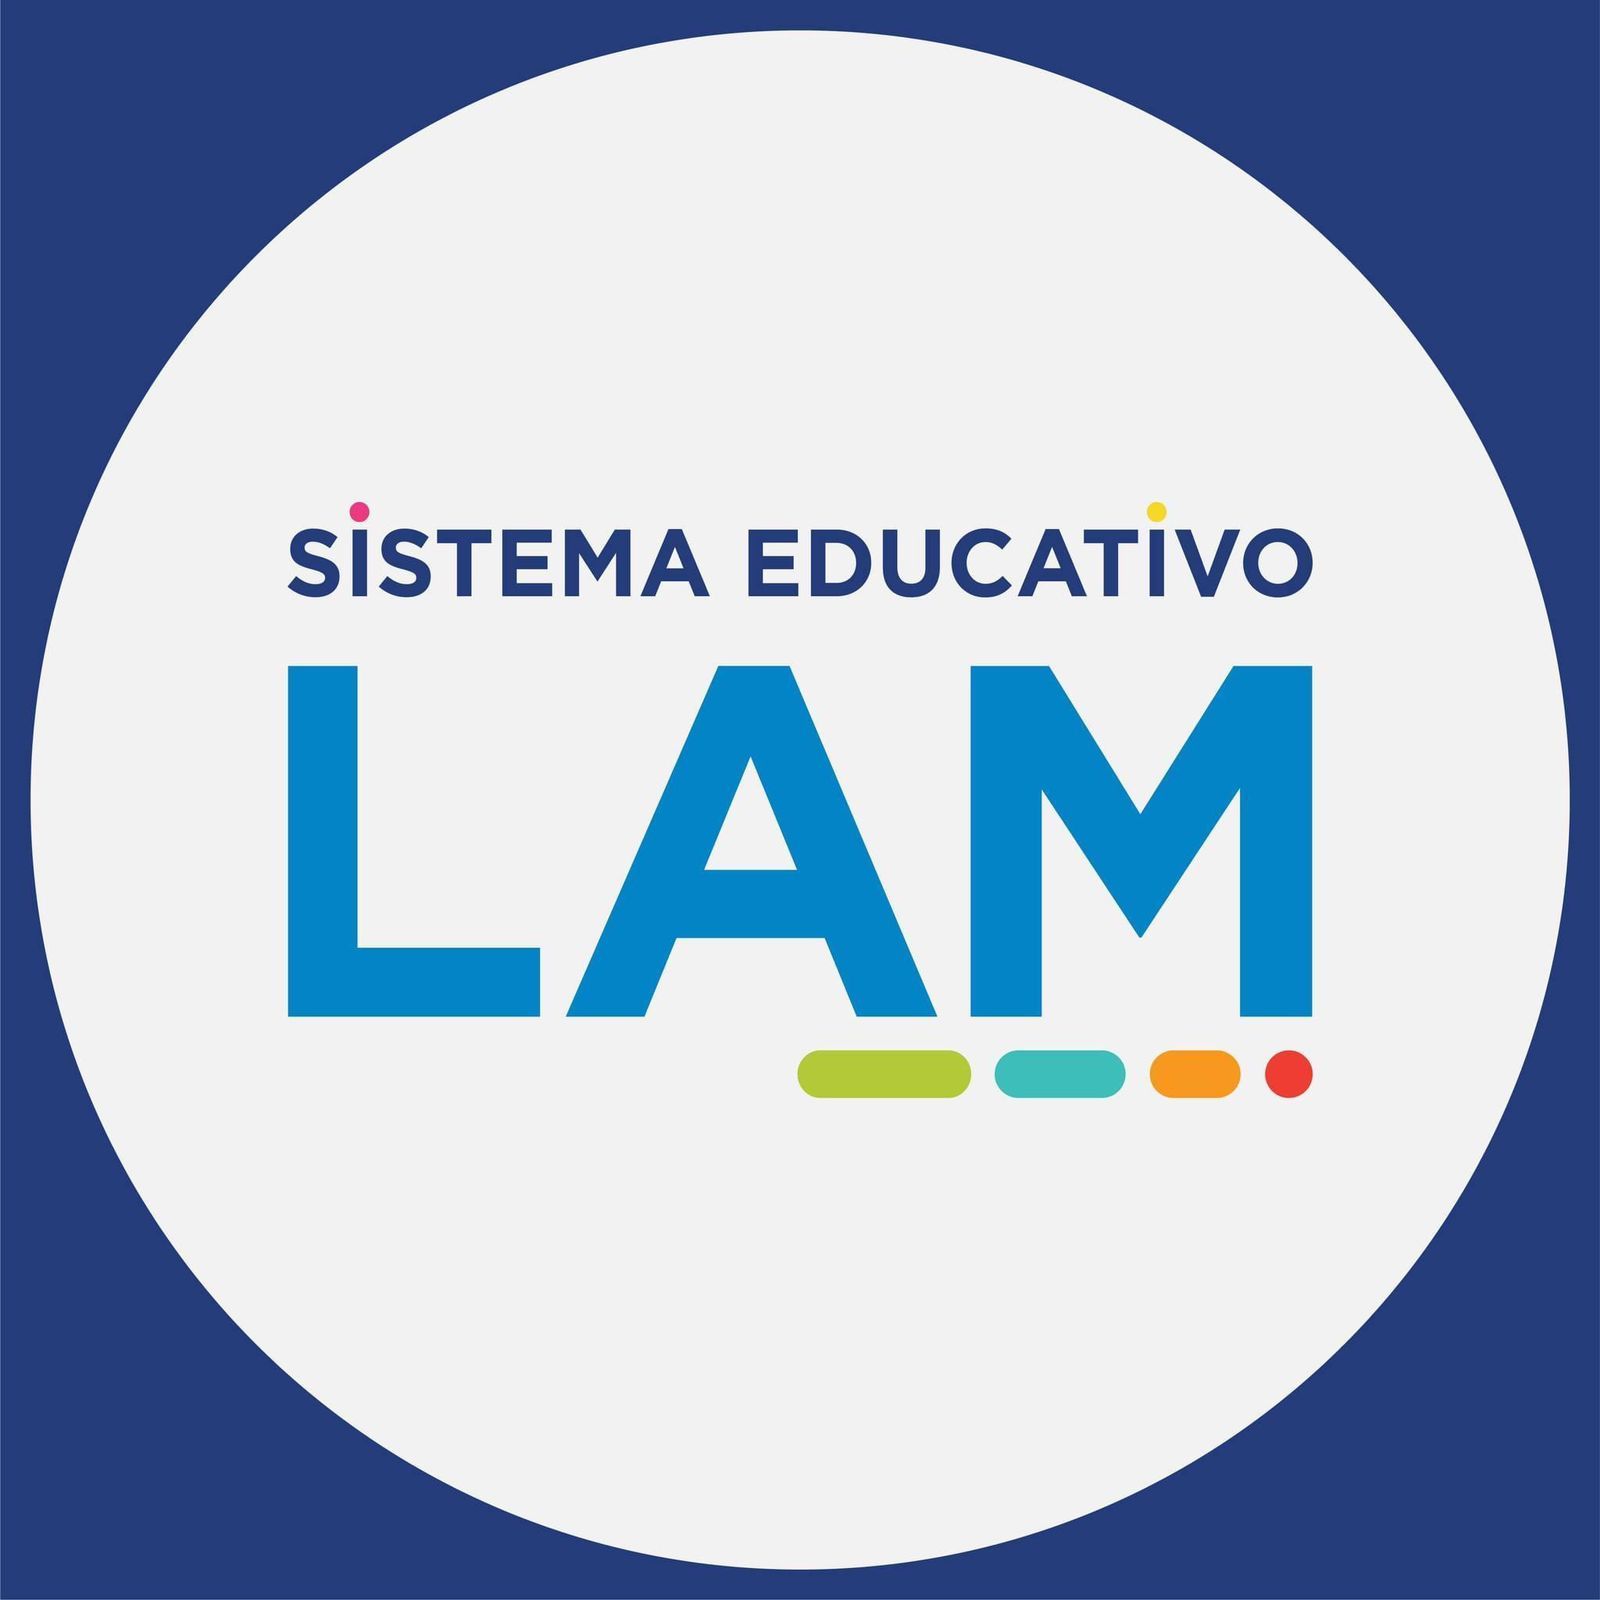 Sistema Educativo LAM